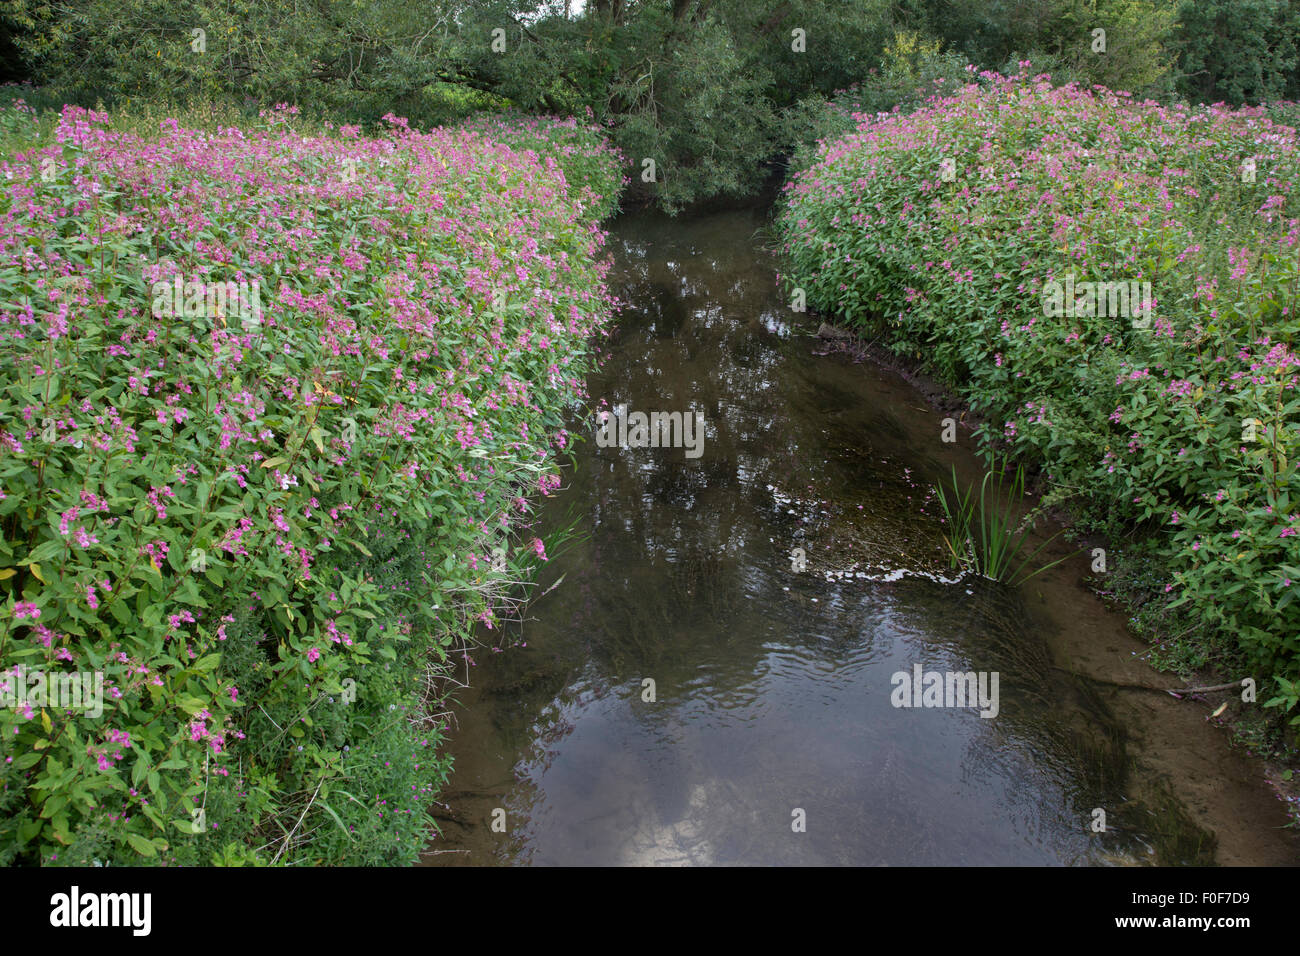 The invasive Himalayan Balsam (Impatiens glandulifera) along an English waterway, England, UK Stock Photo